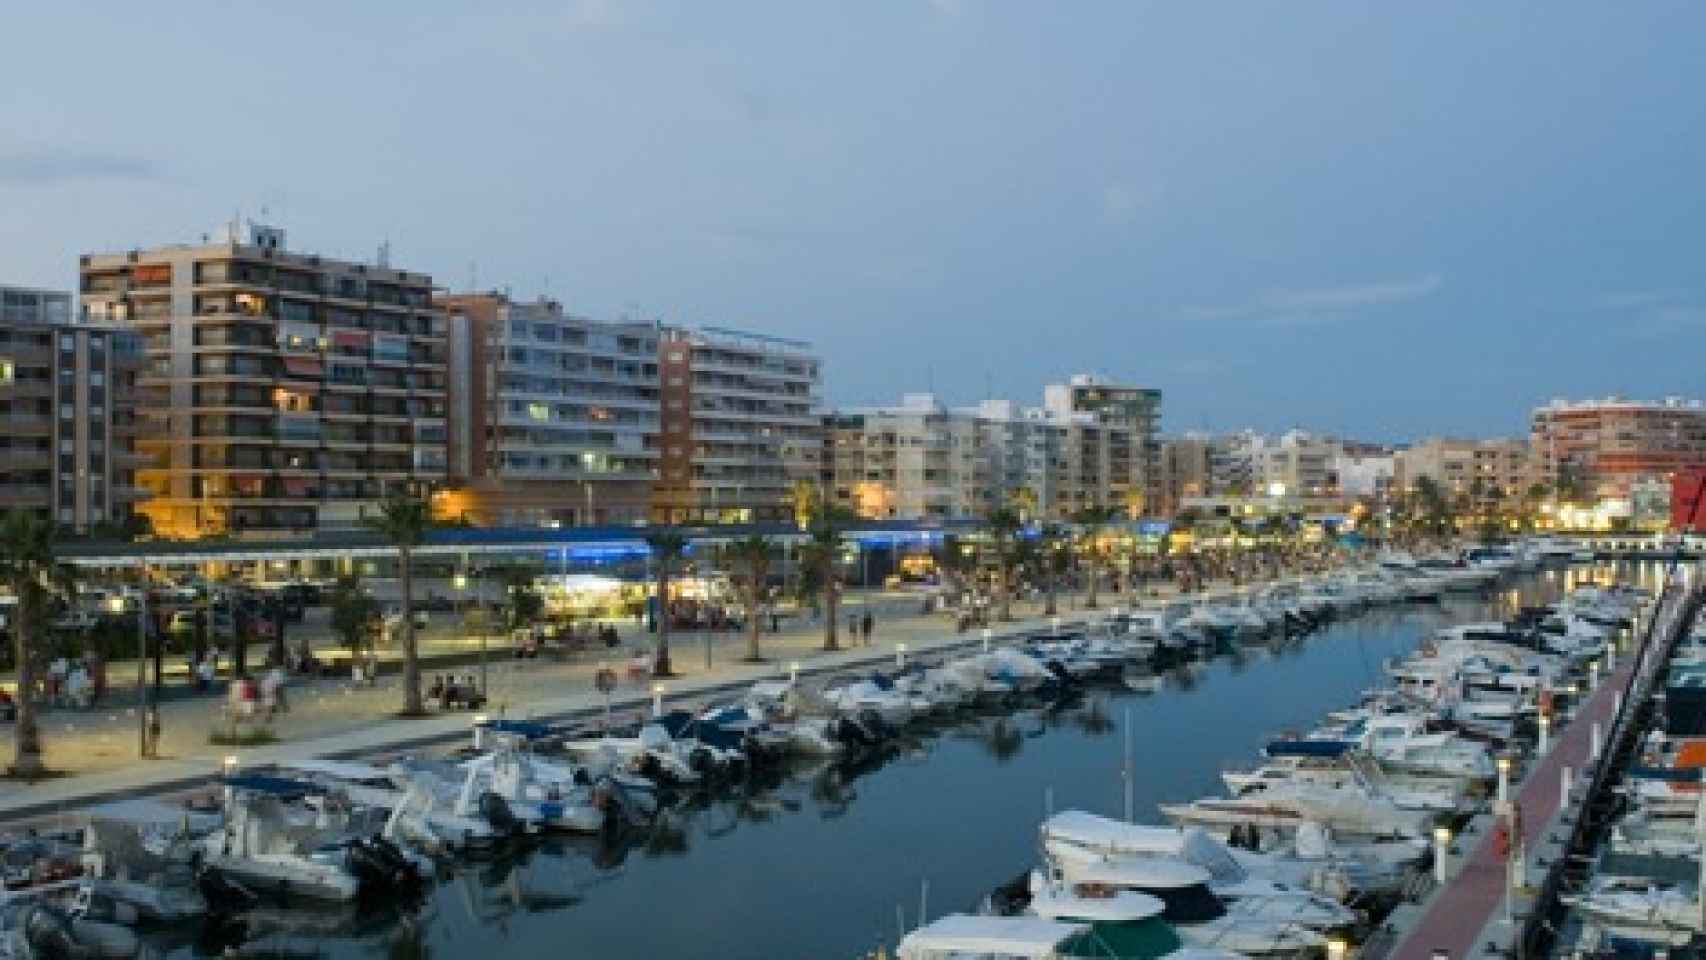 Puerto deportivo de Santa Pola (Alicante).